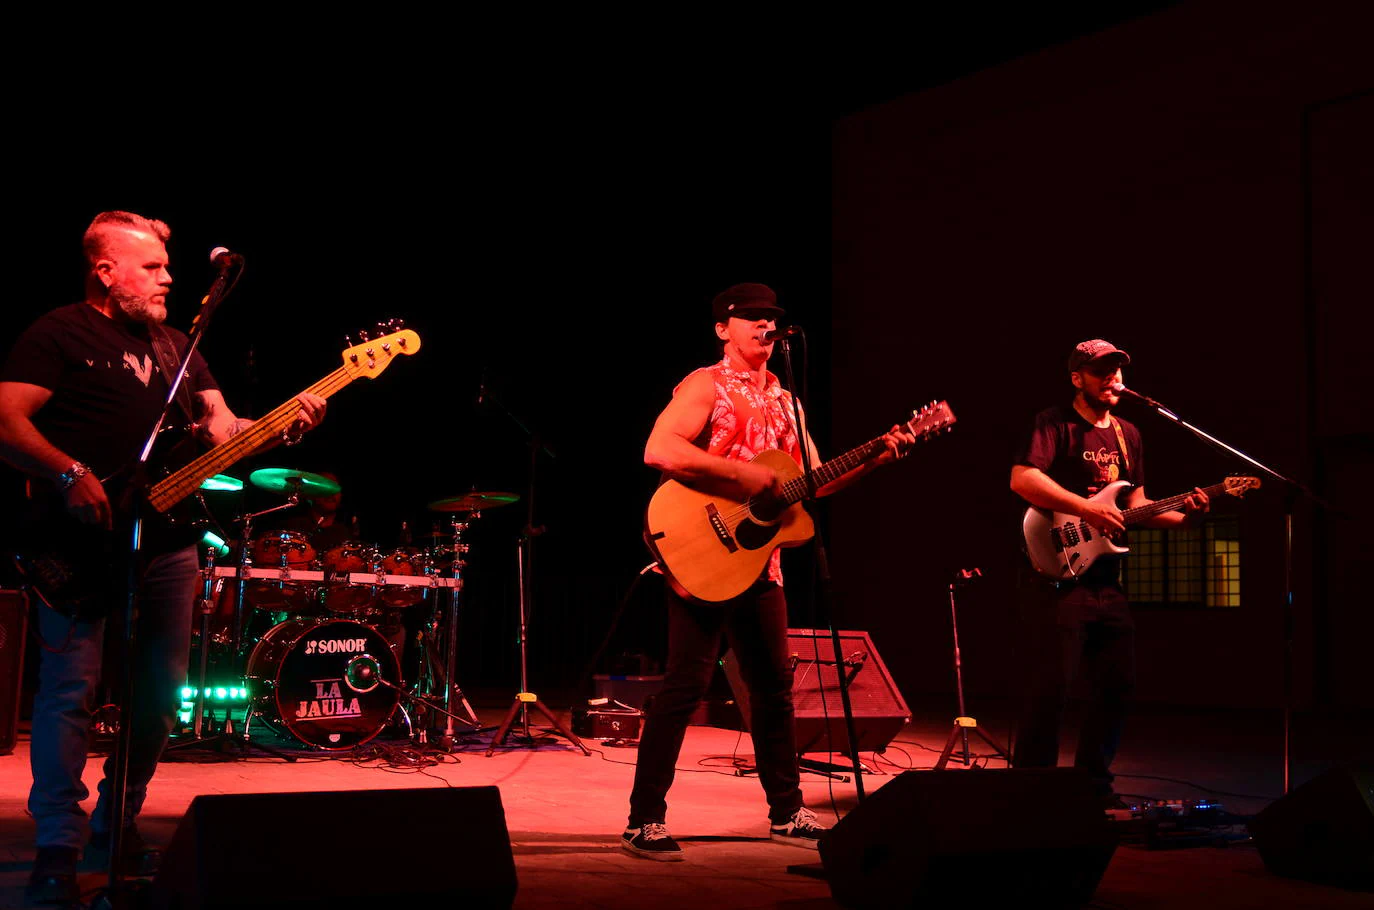 Huétor Vega programó una noche de San Juan con pop rock en directo.